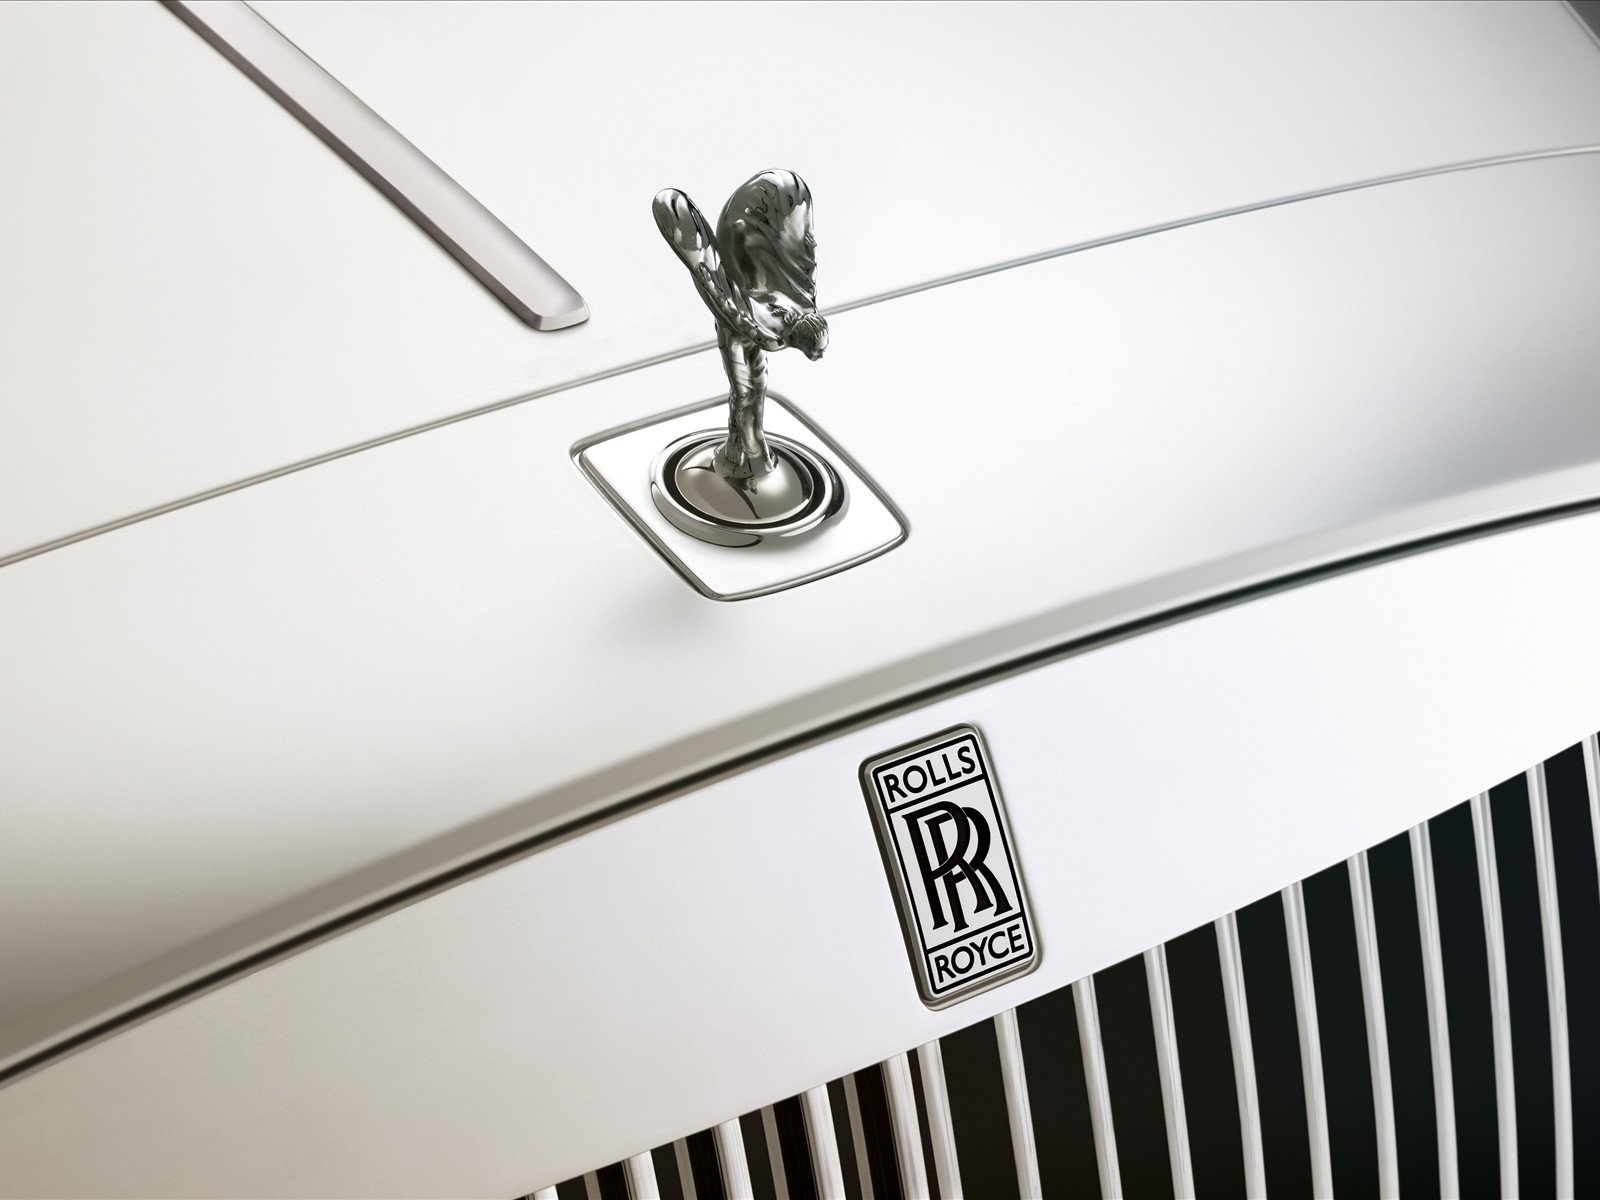 Rolls Royce Logo on Car